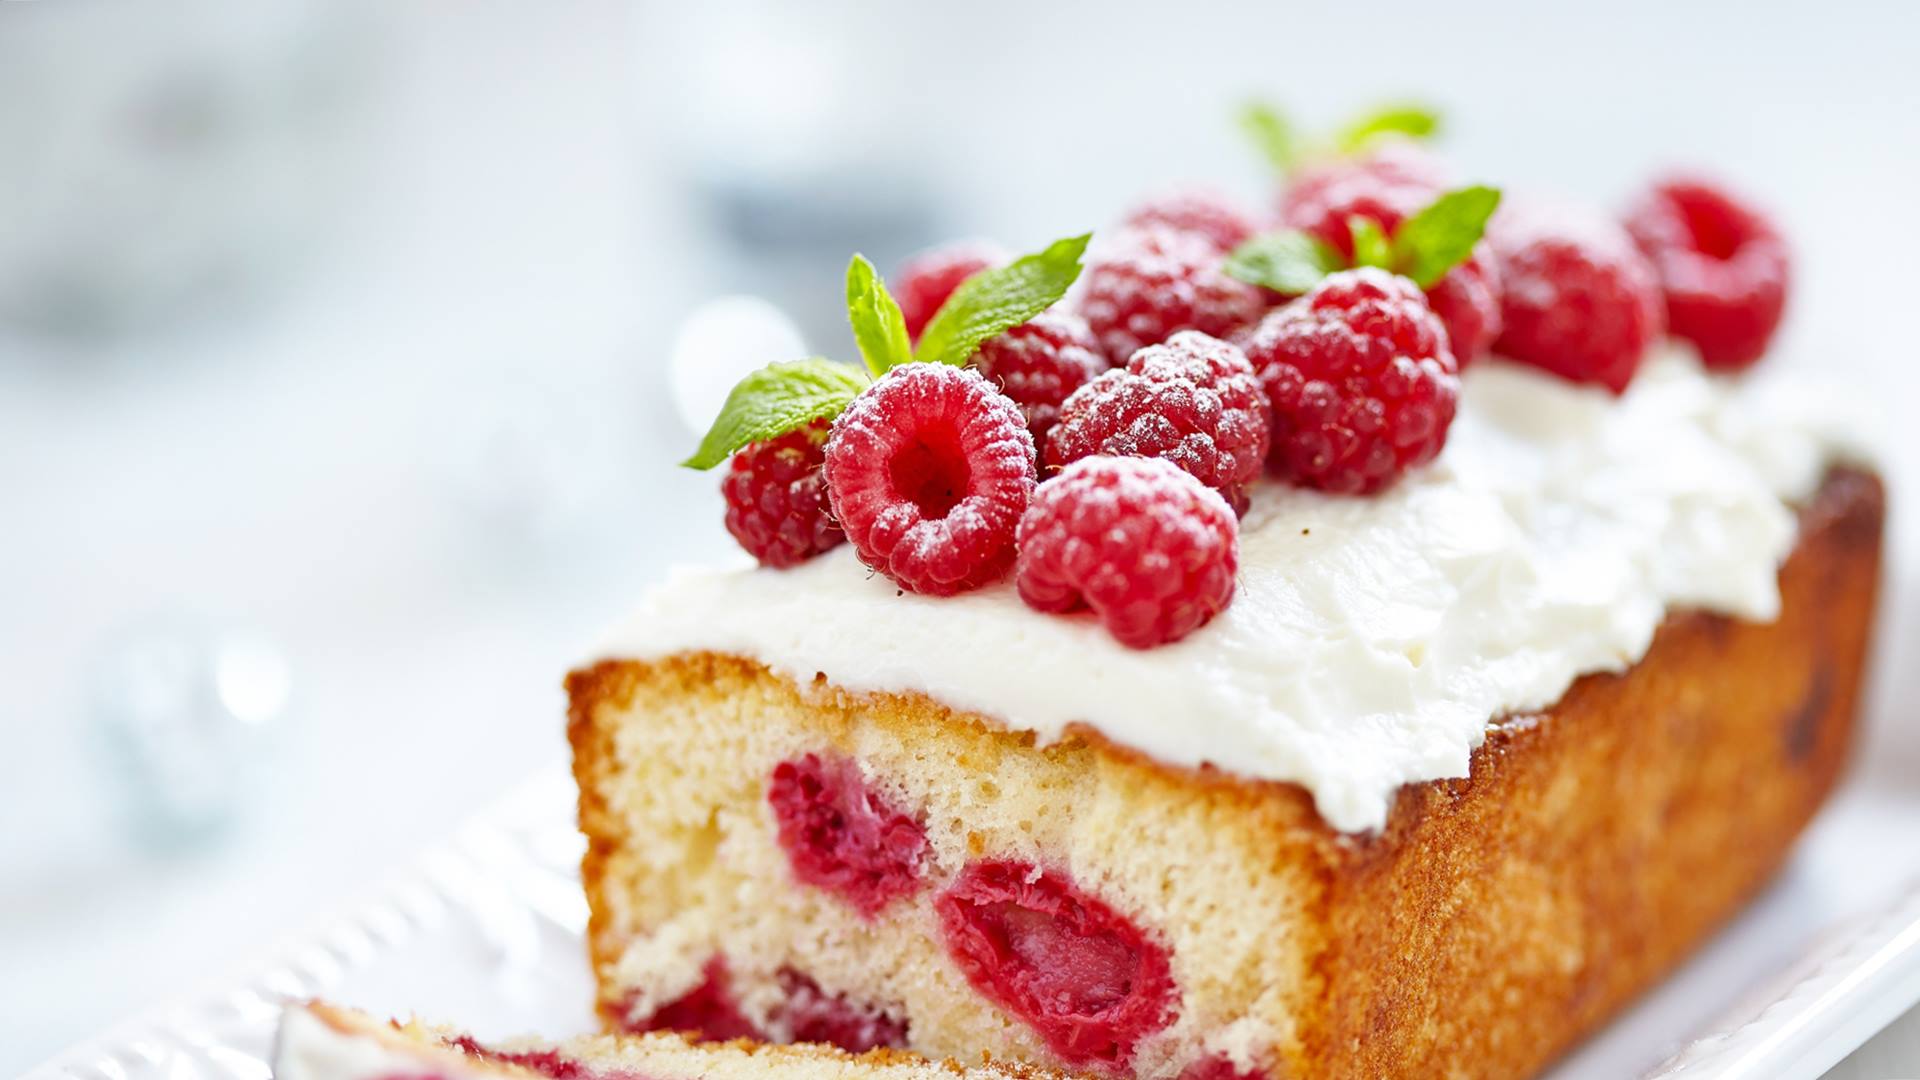 Raspberries Fruit Cake Wallpaper